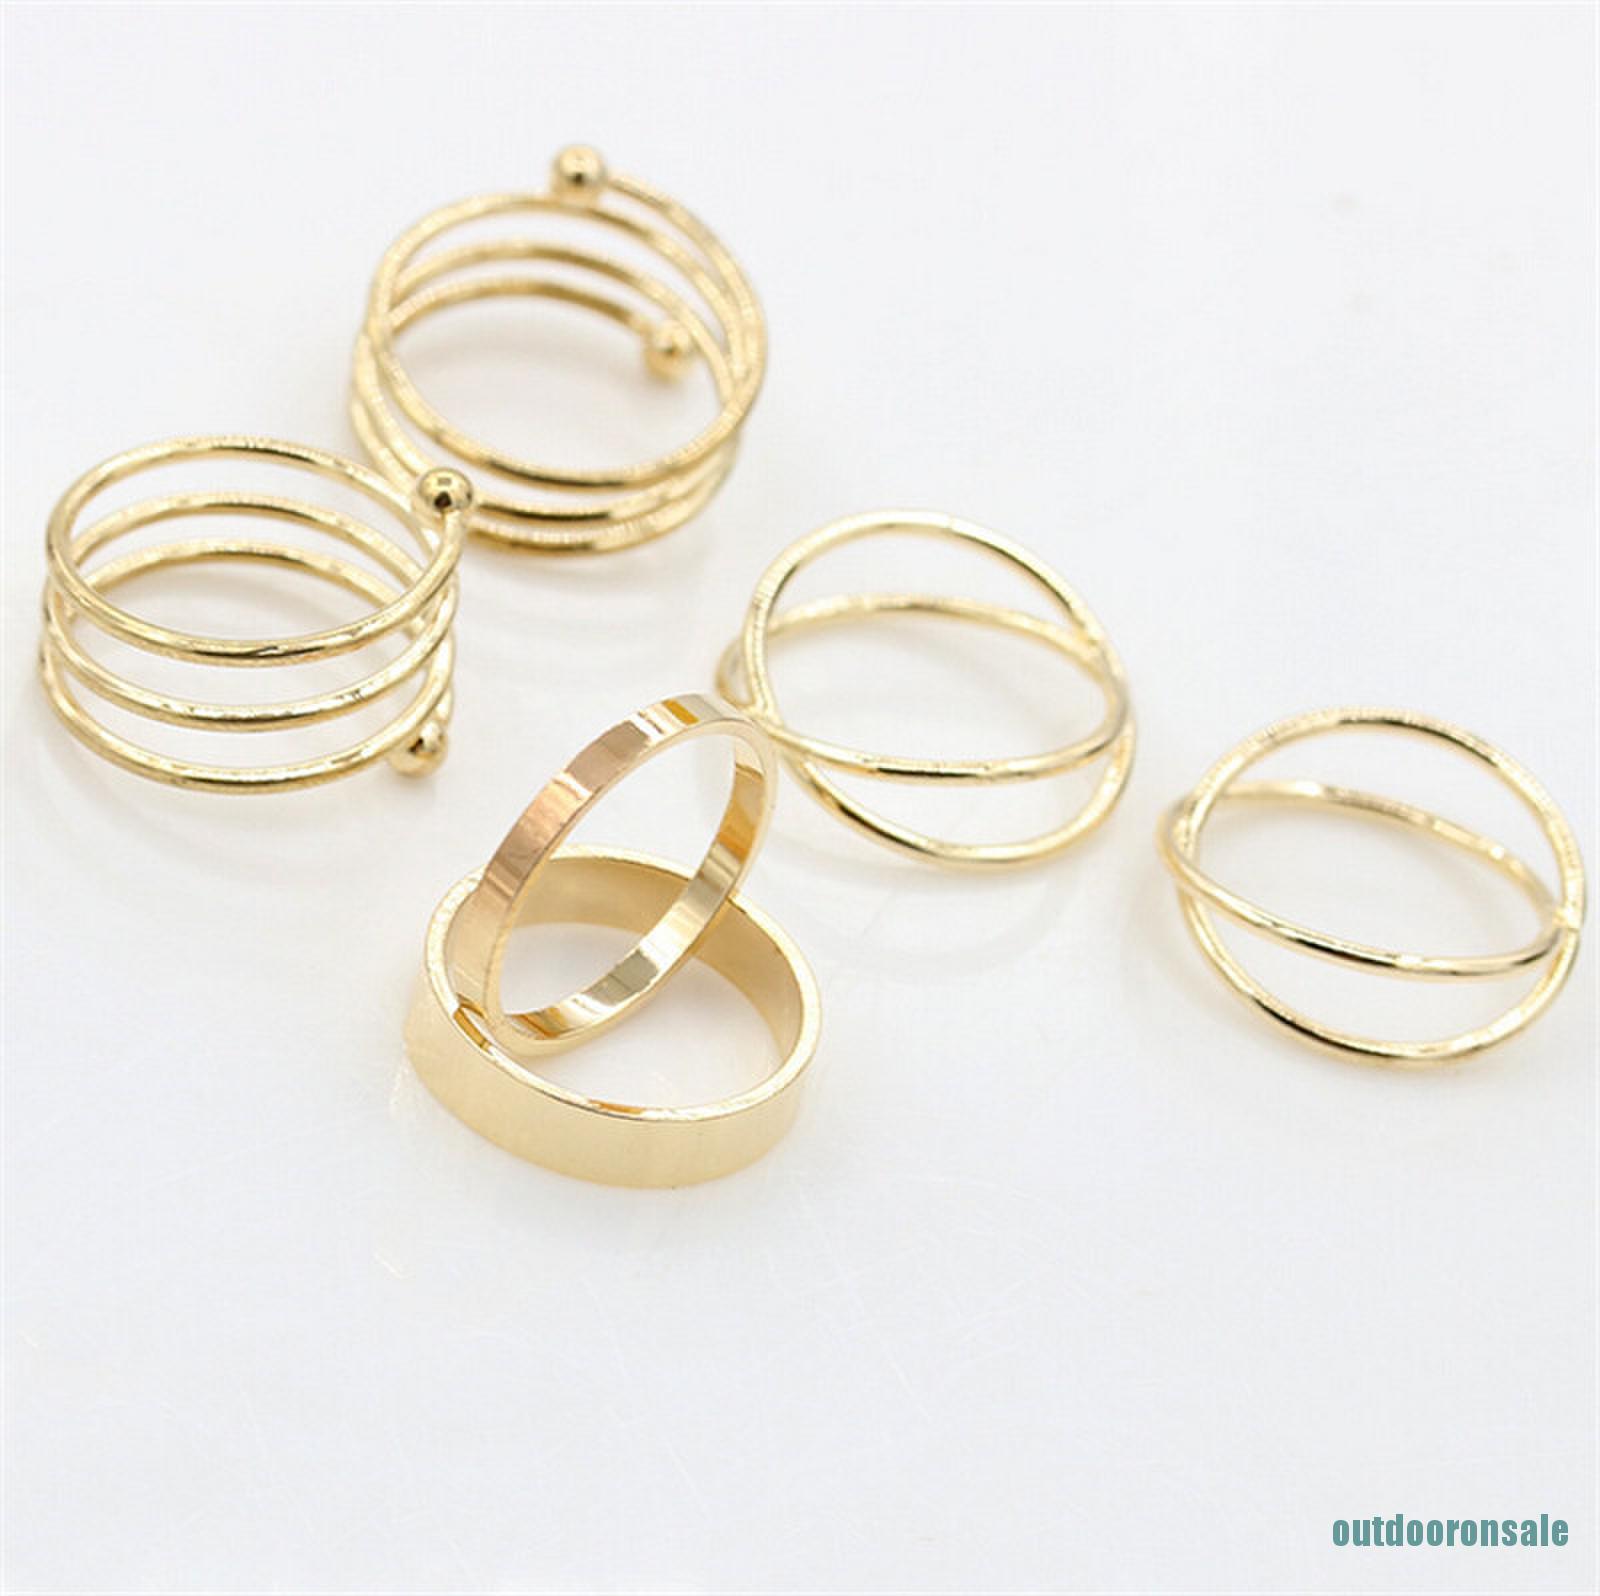 Bộ 6 nhẫn hợp kim mạ vàng thiết kế độc đáo chất lượng cao